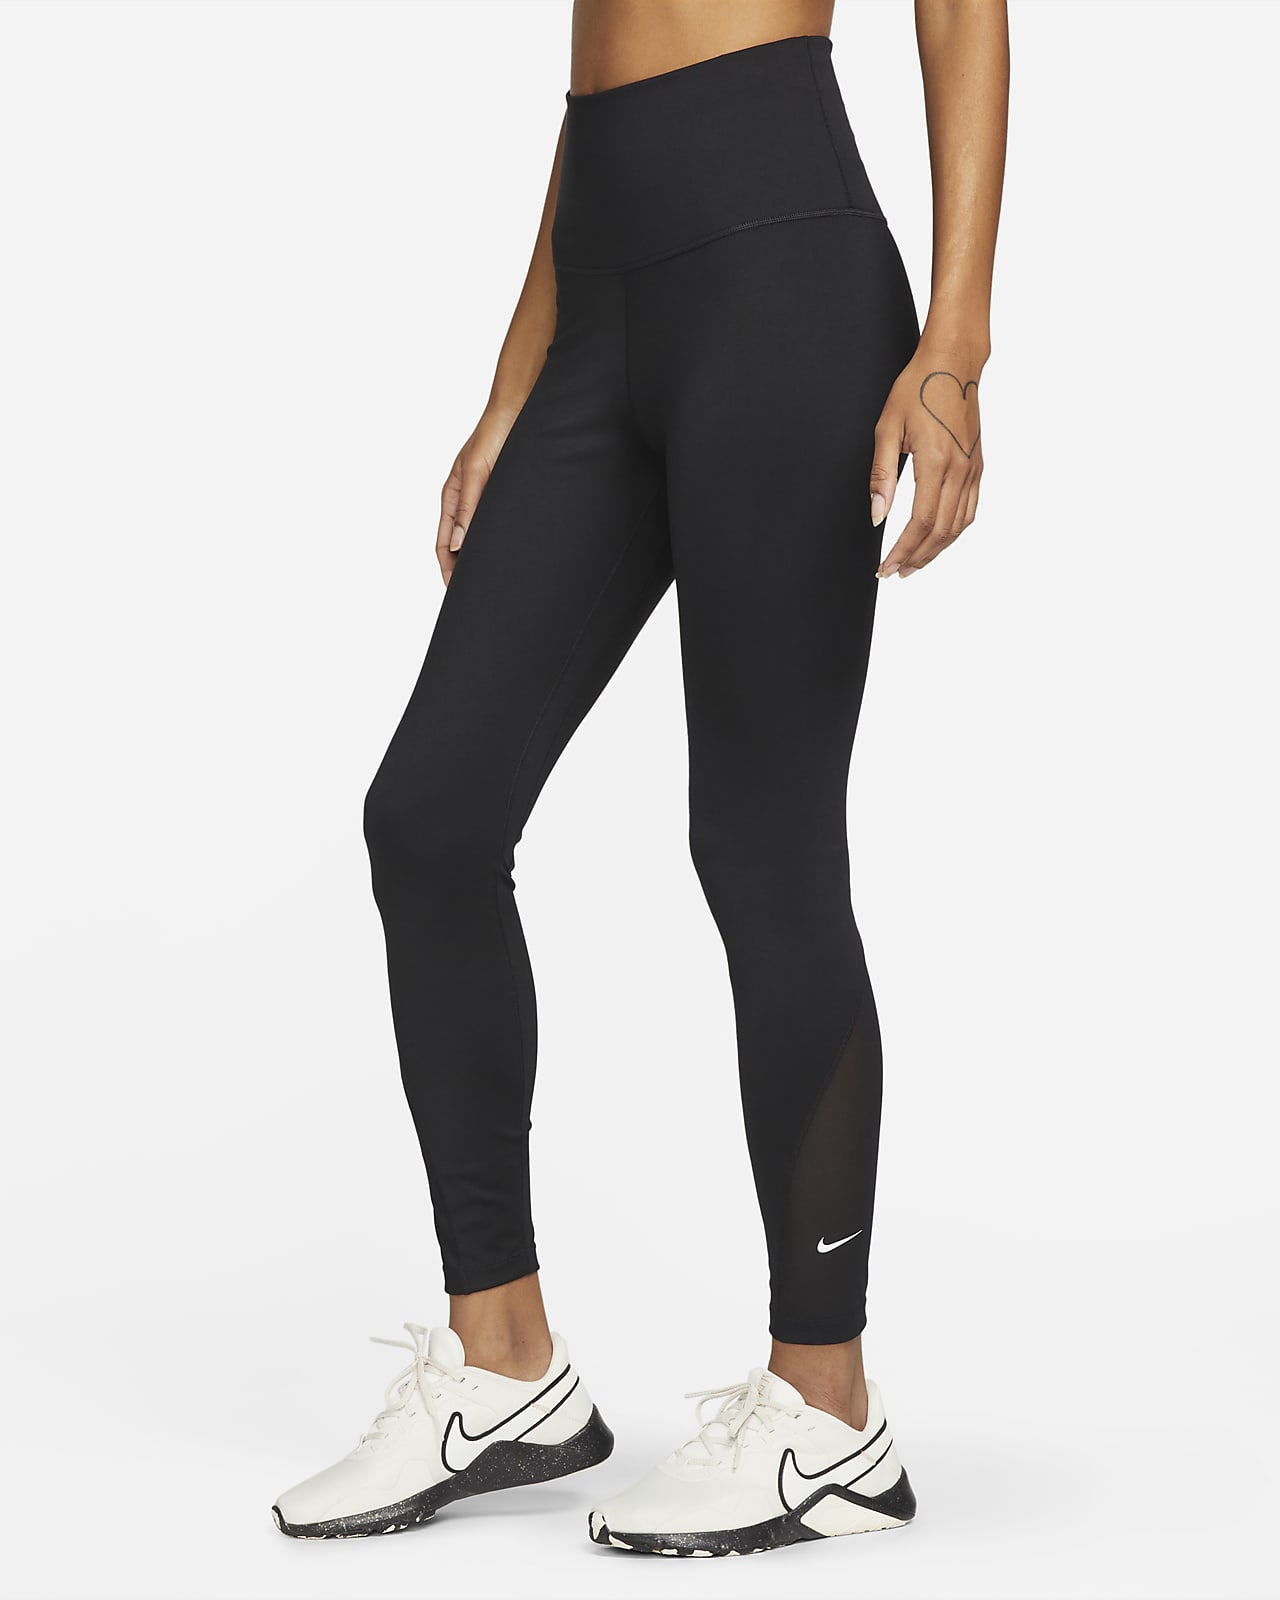 Nike One leggings i 7/8 lengde med høyt liv til dame